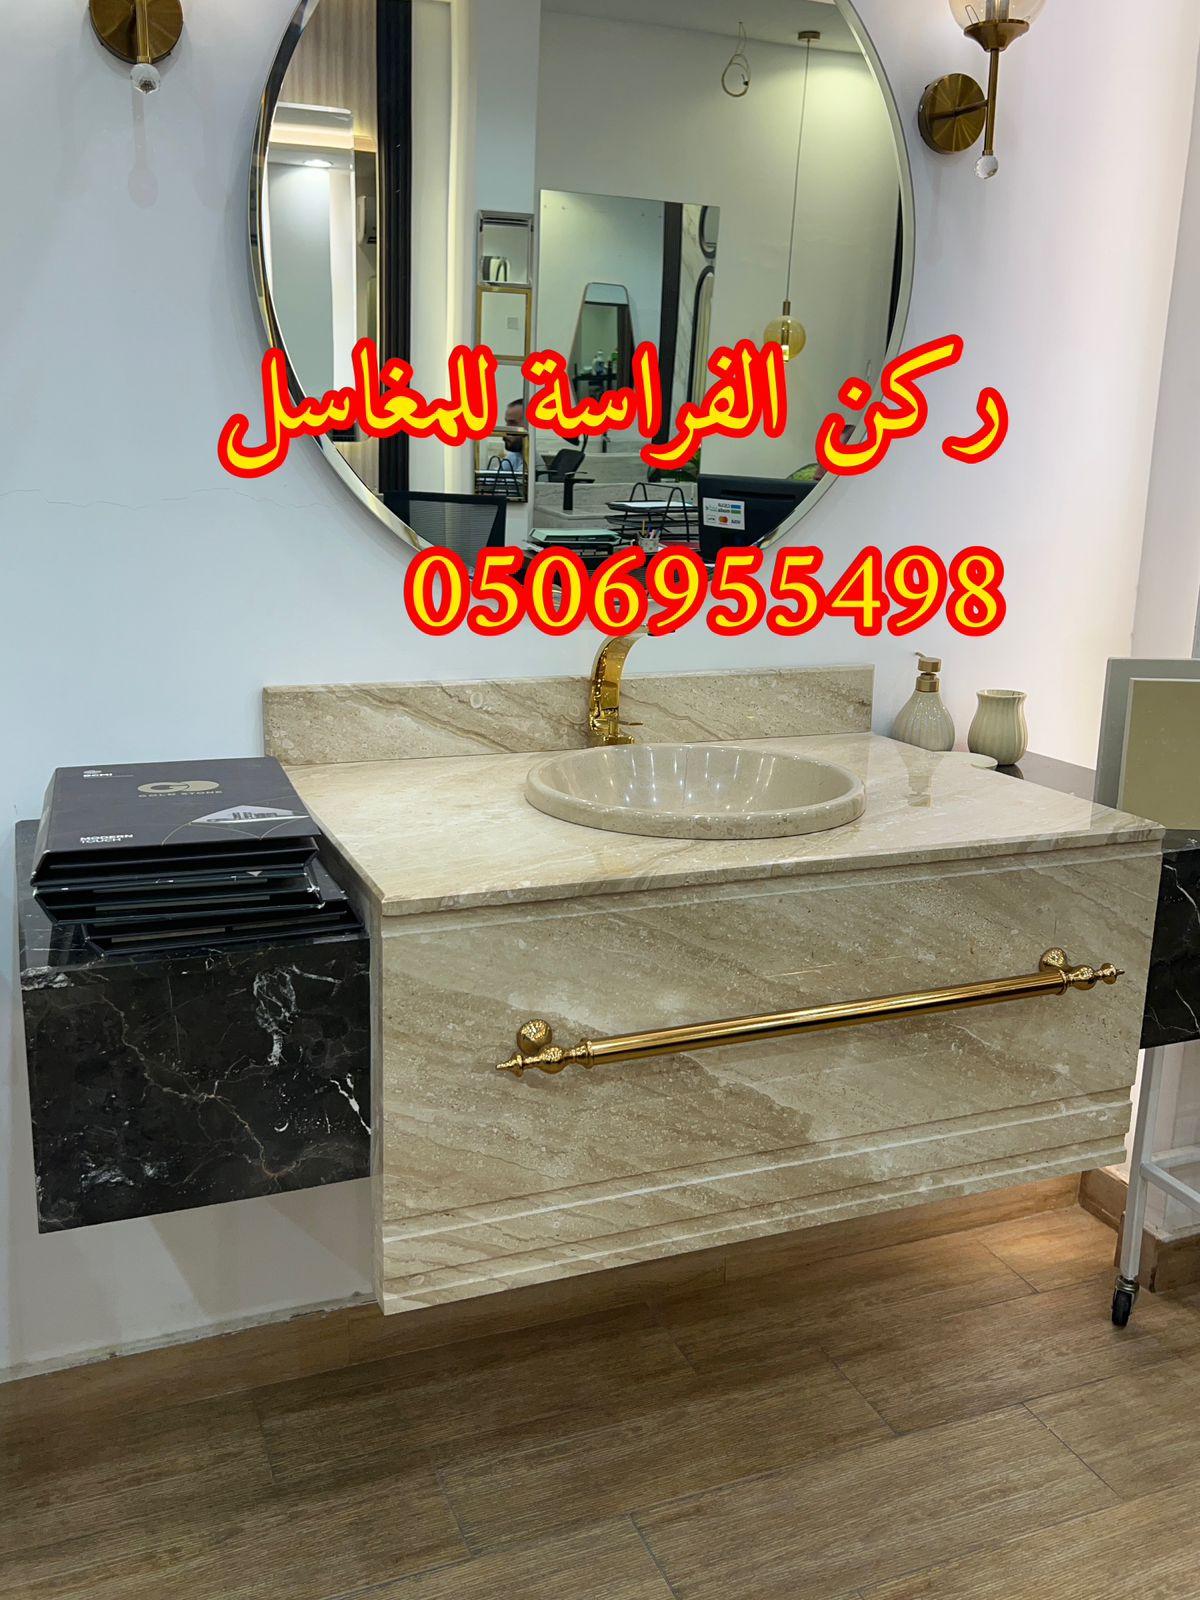 ديكورات مغاسل حمامات رخام في الرياض,0506955498 810336614